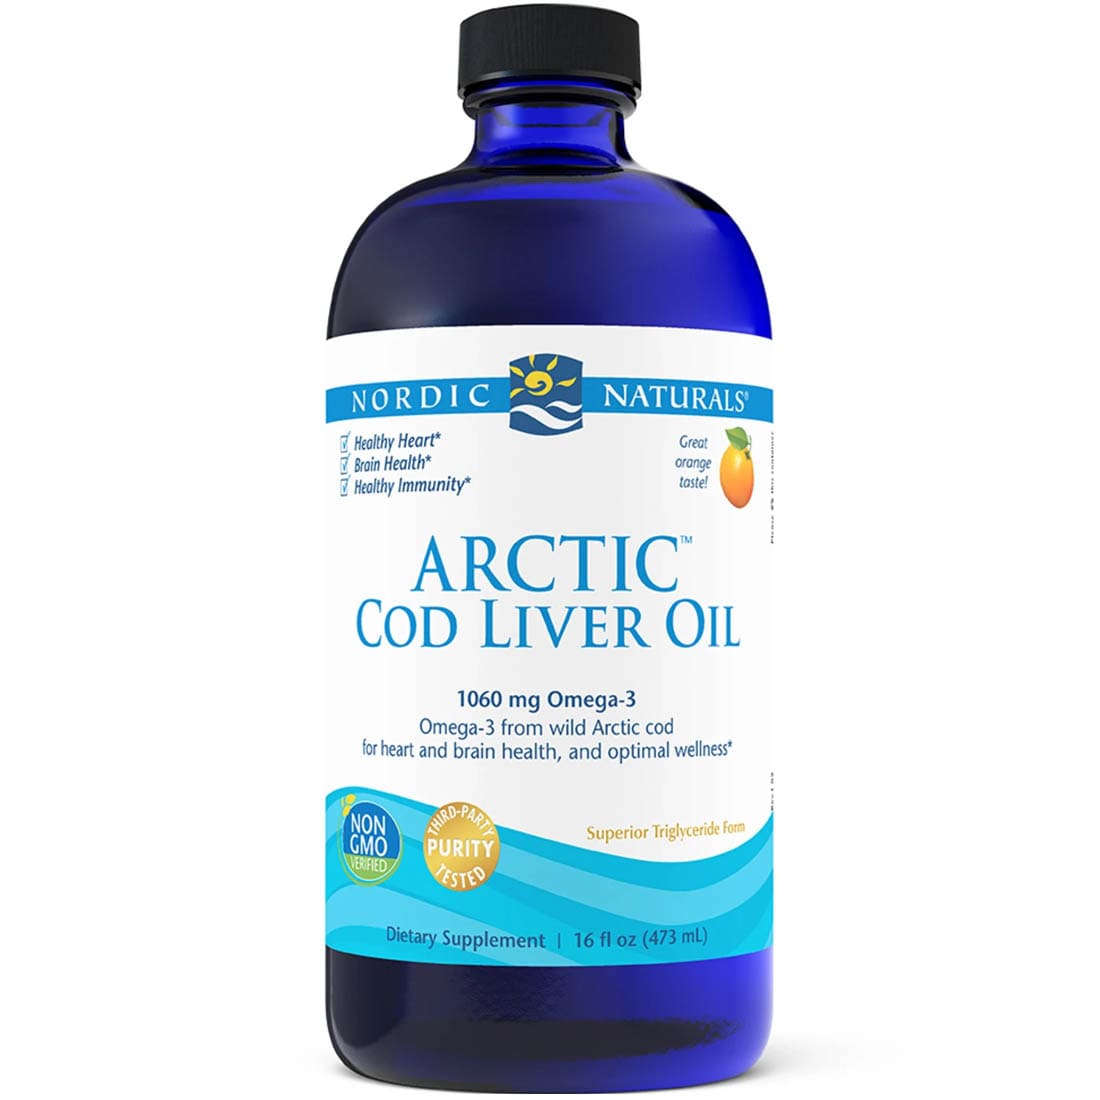 Nordic Naturals Arctic Cod Liver Oil Liquid